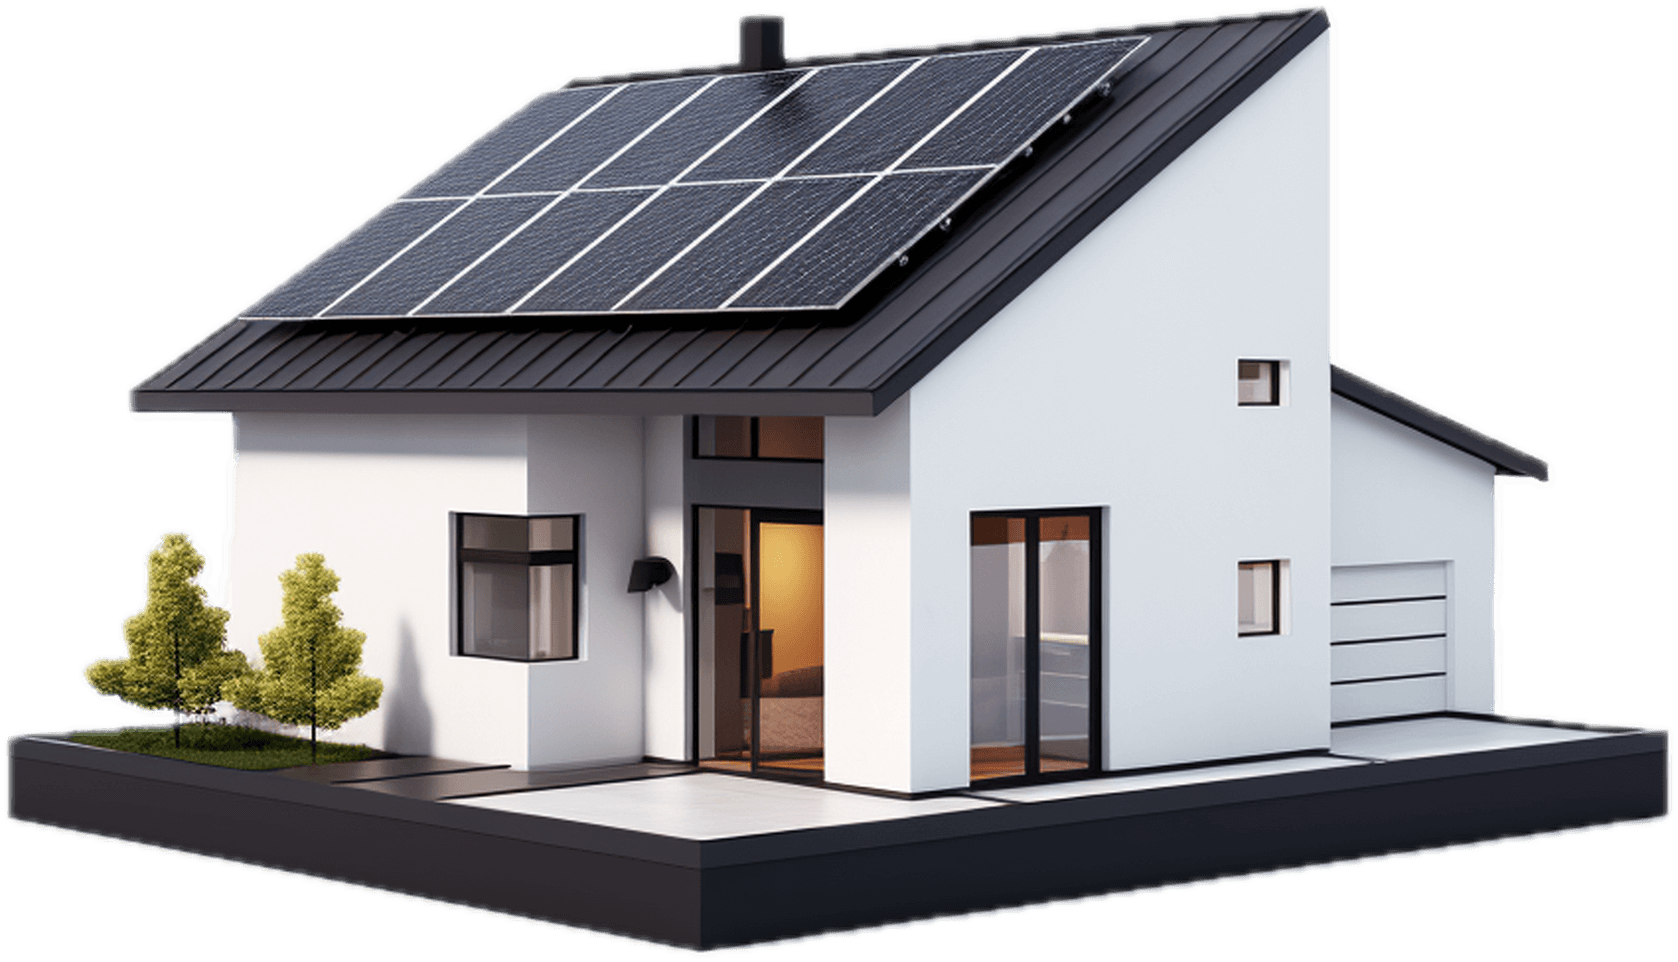 Solarhaus Modellgrafik - Illustration eines nachhaltigen Solarhauses.